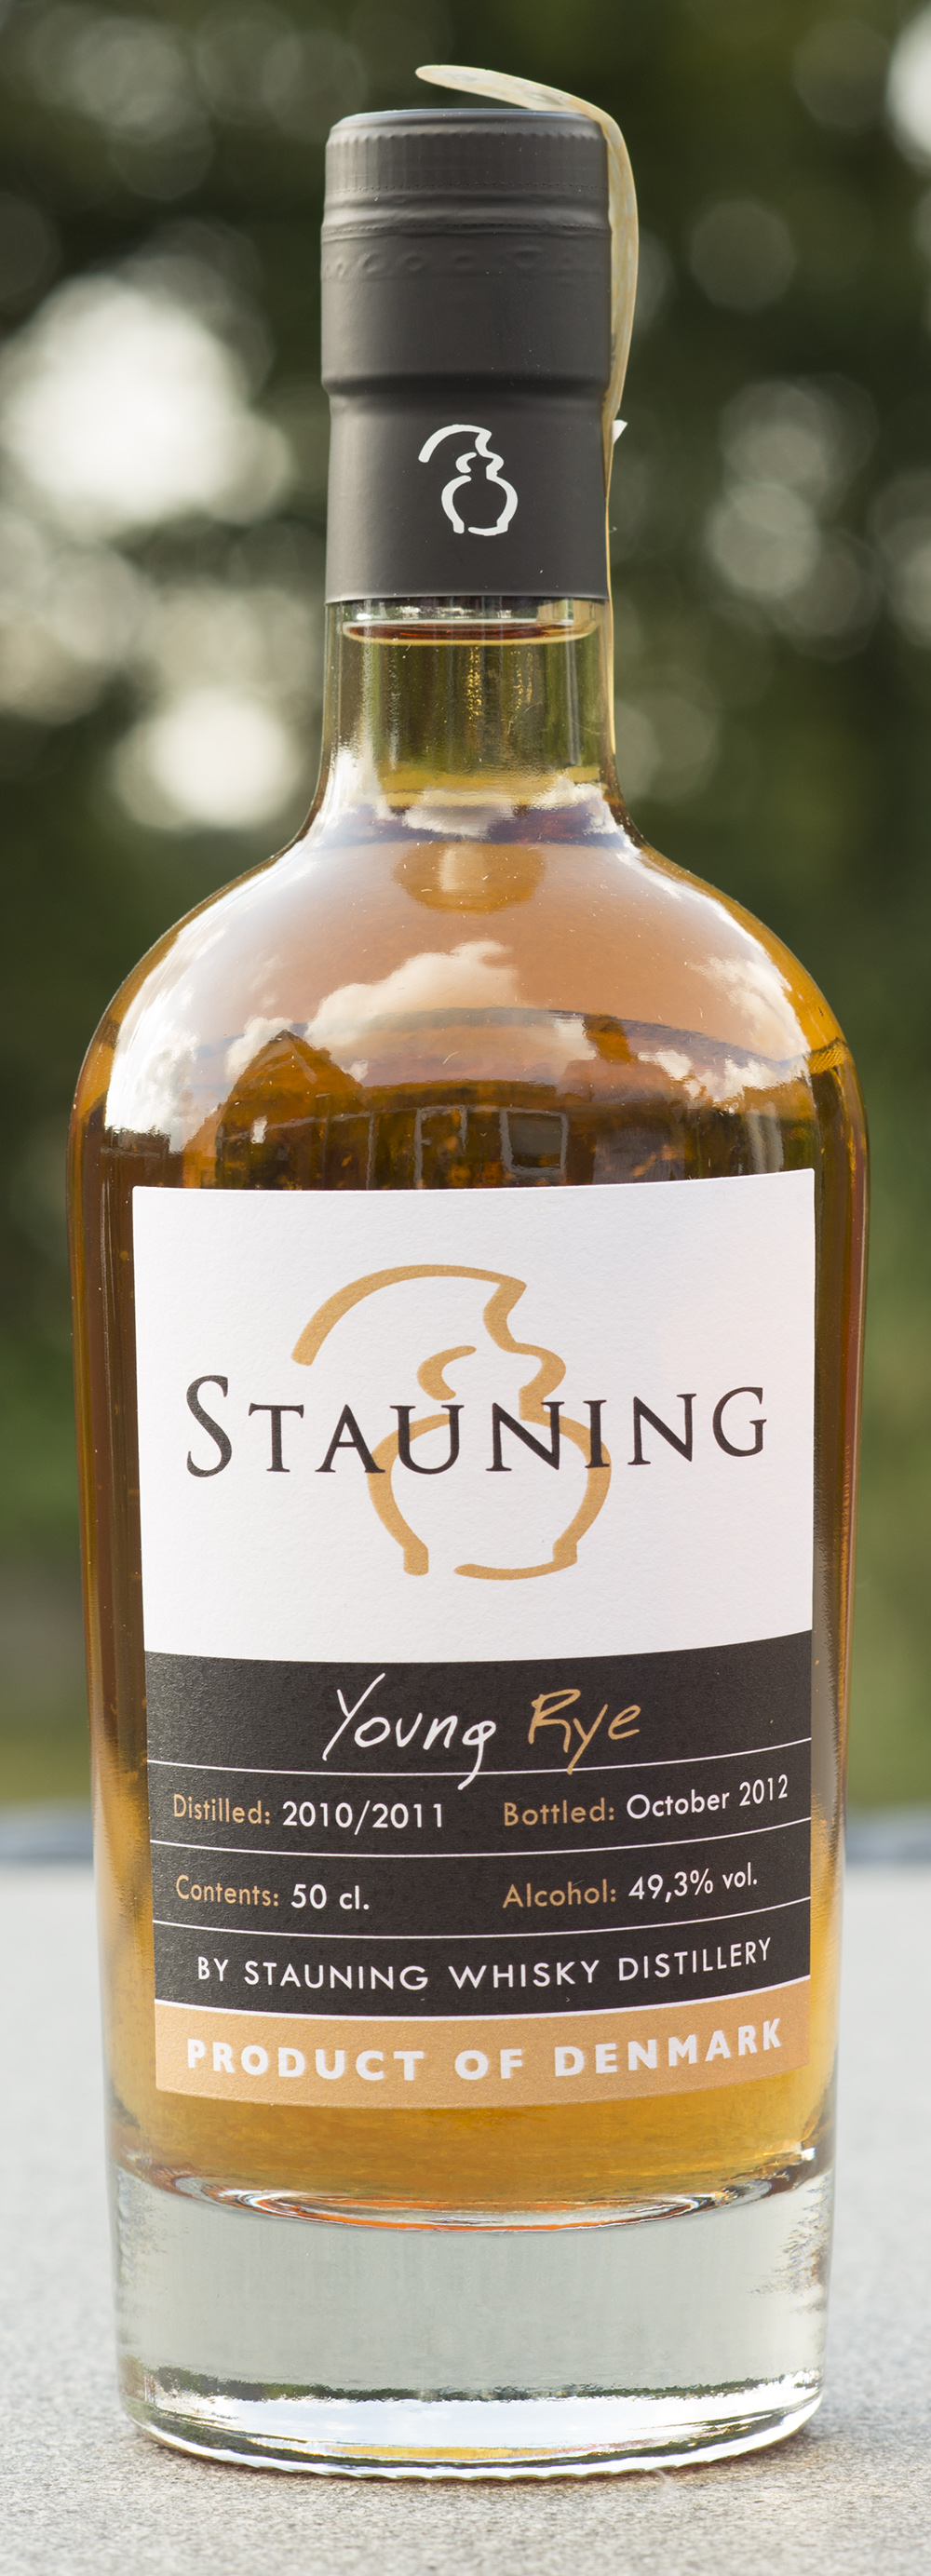 Billede: DSC_3336 Stauning Young Rye - bottled october 2012 - bottle front.jpg